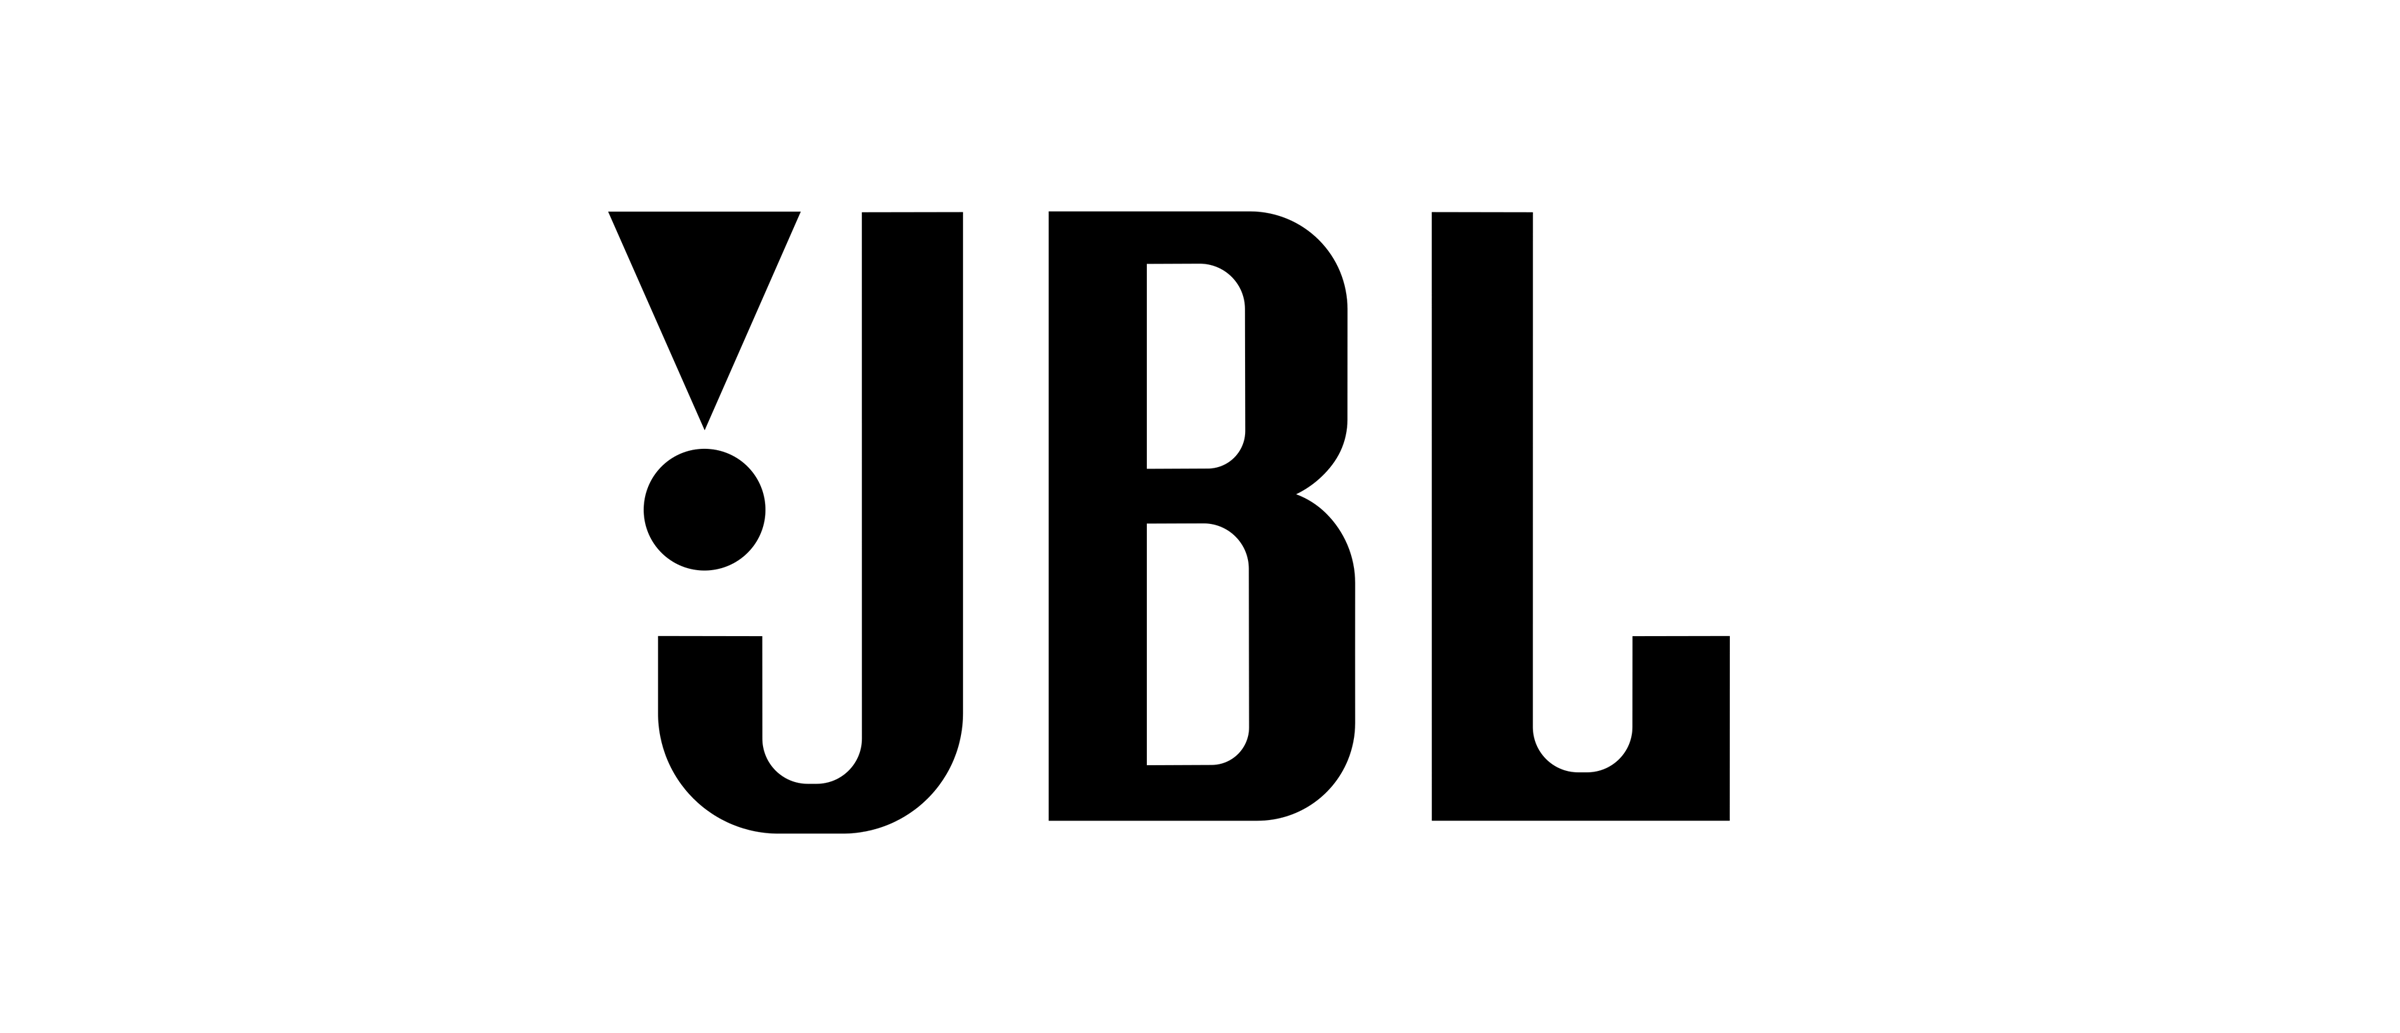 blackfriday_001_partner_logo_7.jpg